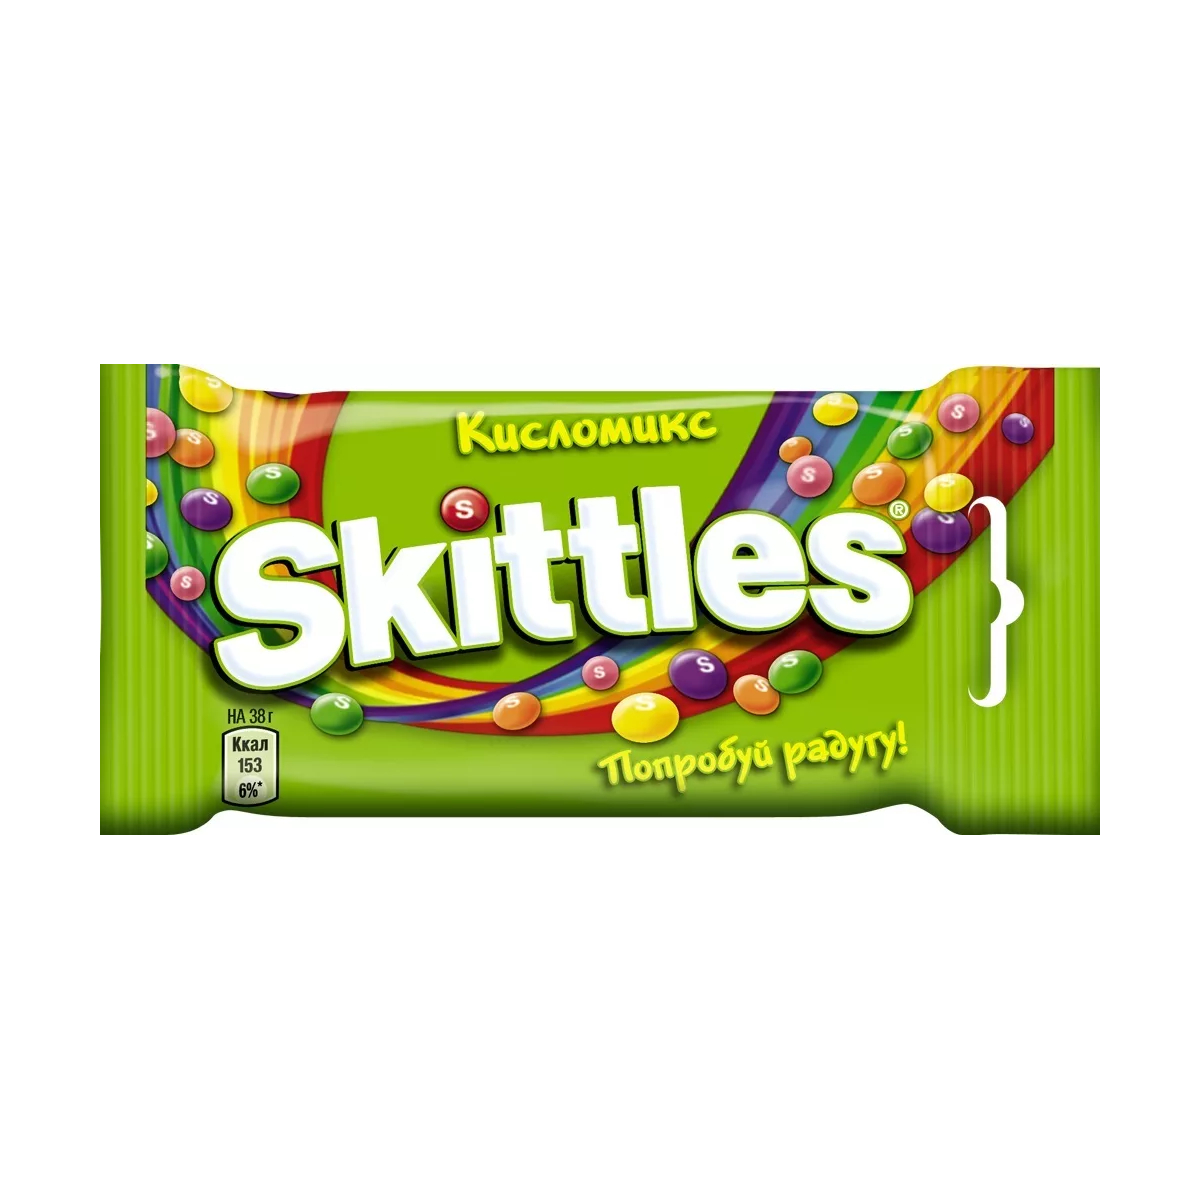 Драже Skittles Кисломикс, в разноцветной глазури, 38 г конфеты жевательные skittles кисломикс 70 г